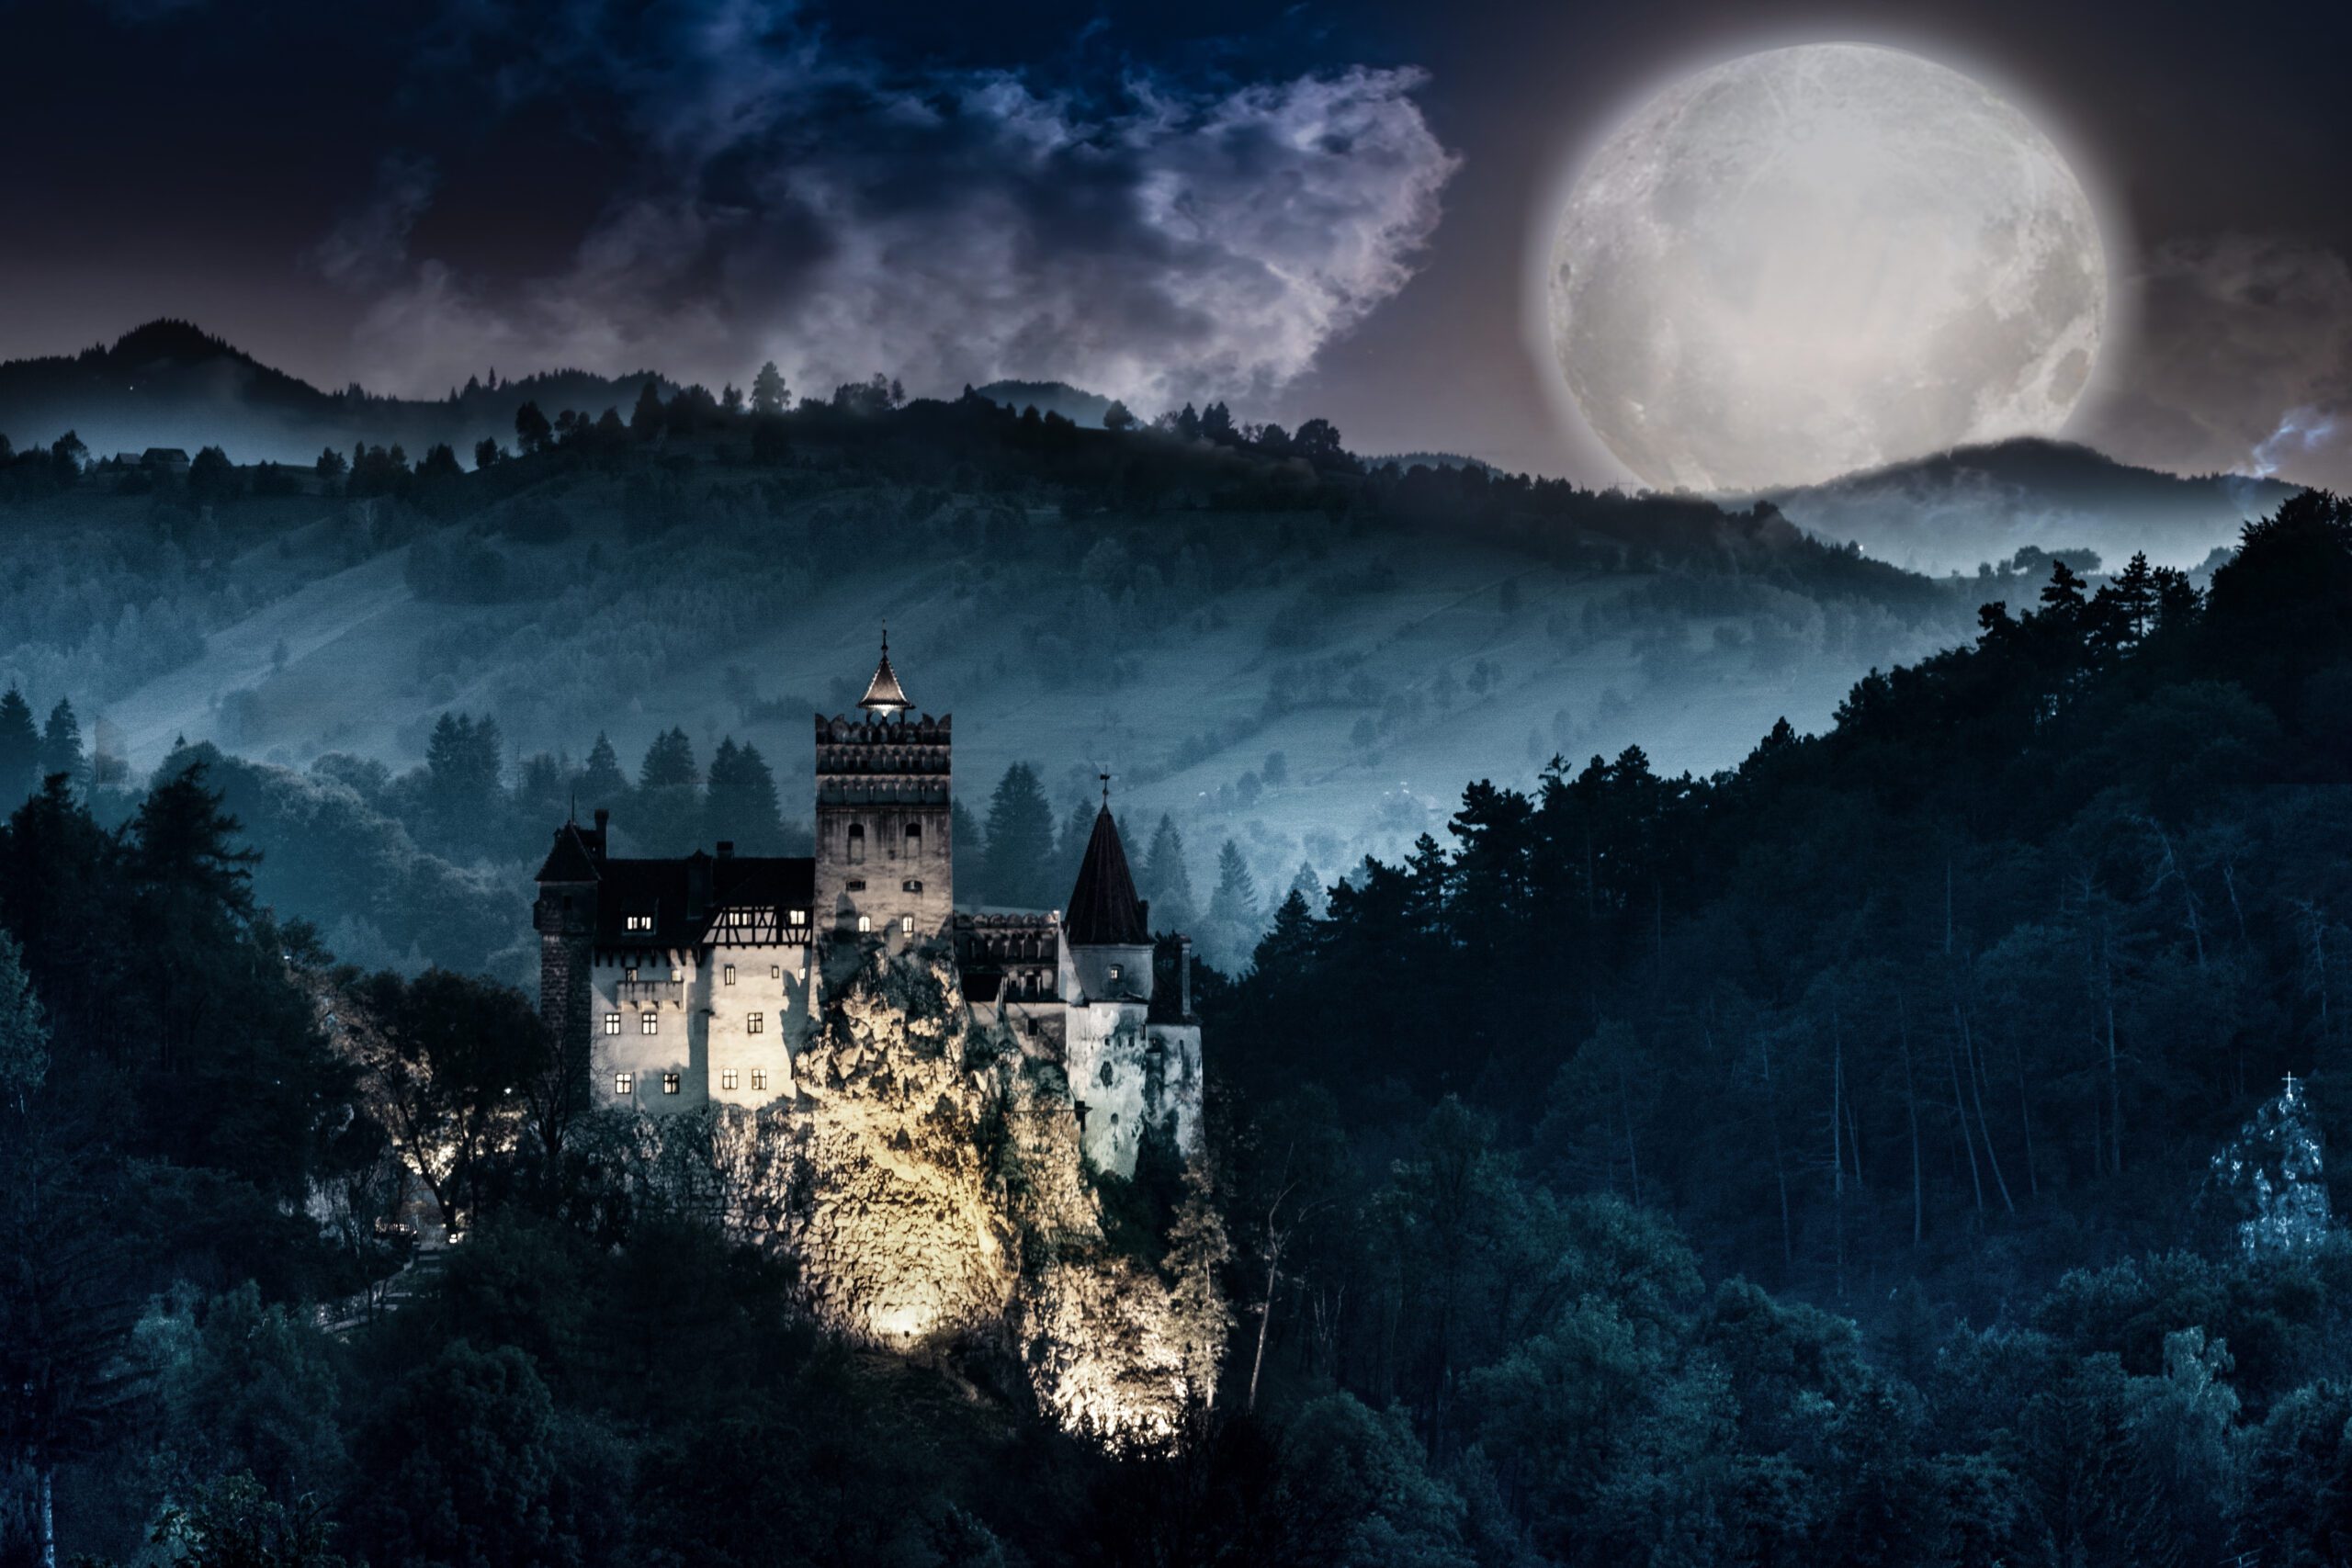 Romanya’da Drakula’dan Daha Fazlasını Bulmak